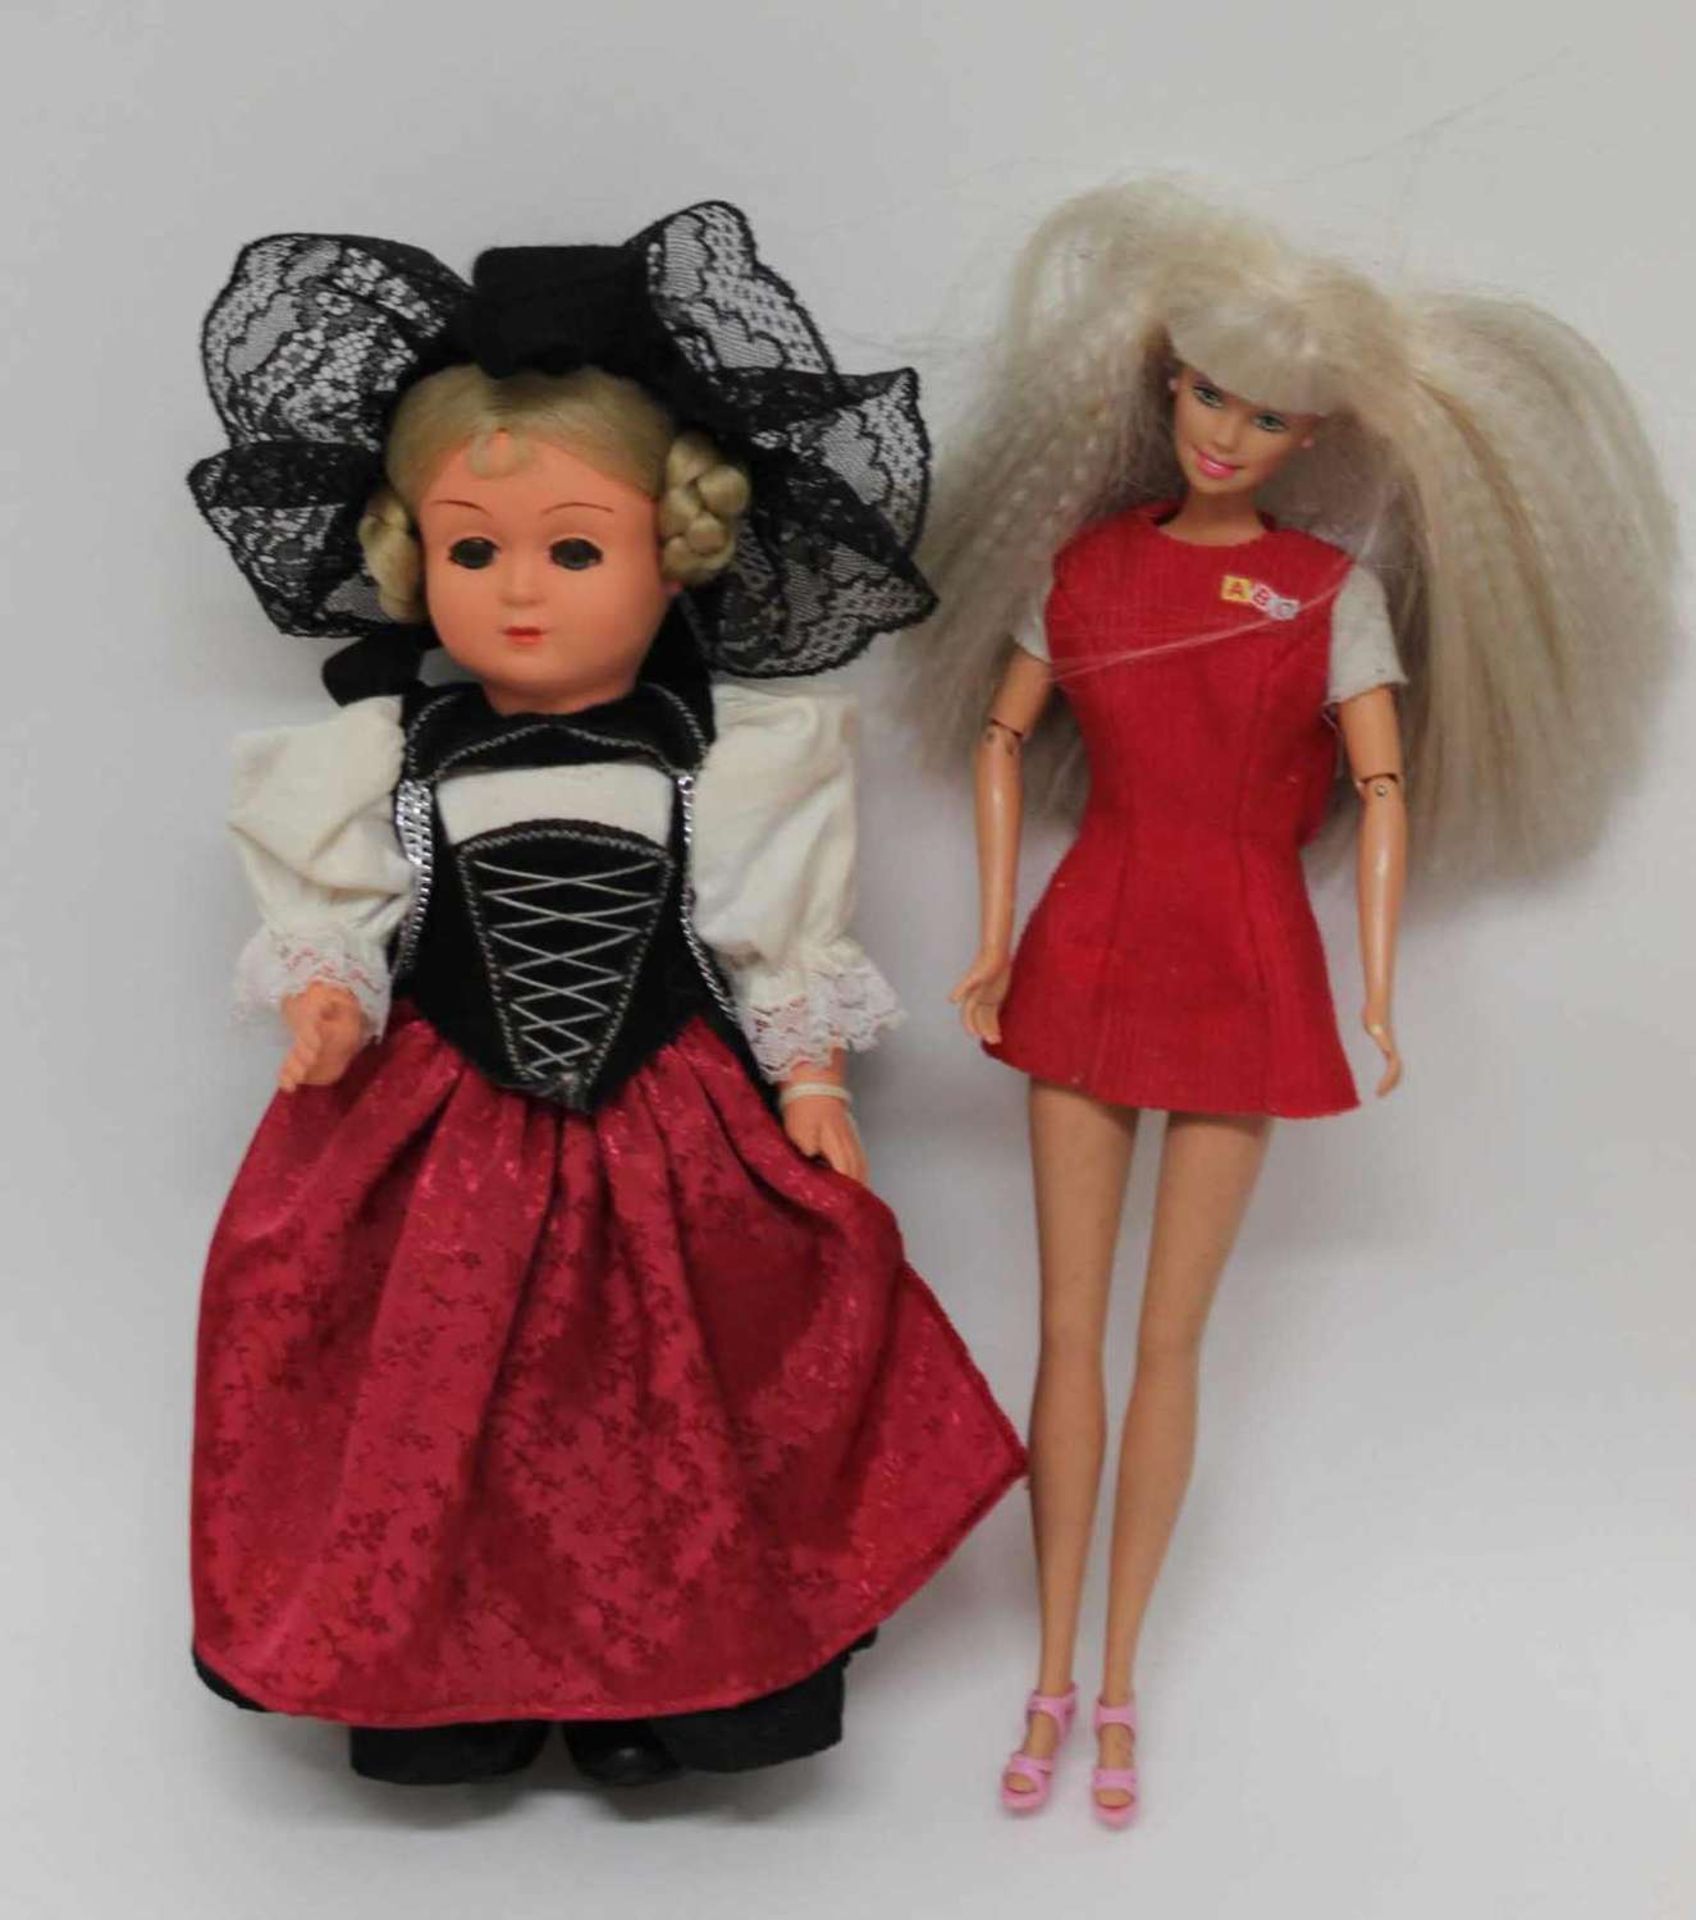 1 alte Barbie, im roten Kleid "ABC", Armgelenke beweglich, sowie 1 Trachtenpuppe "Costume Dolls /